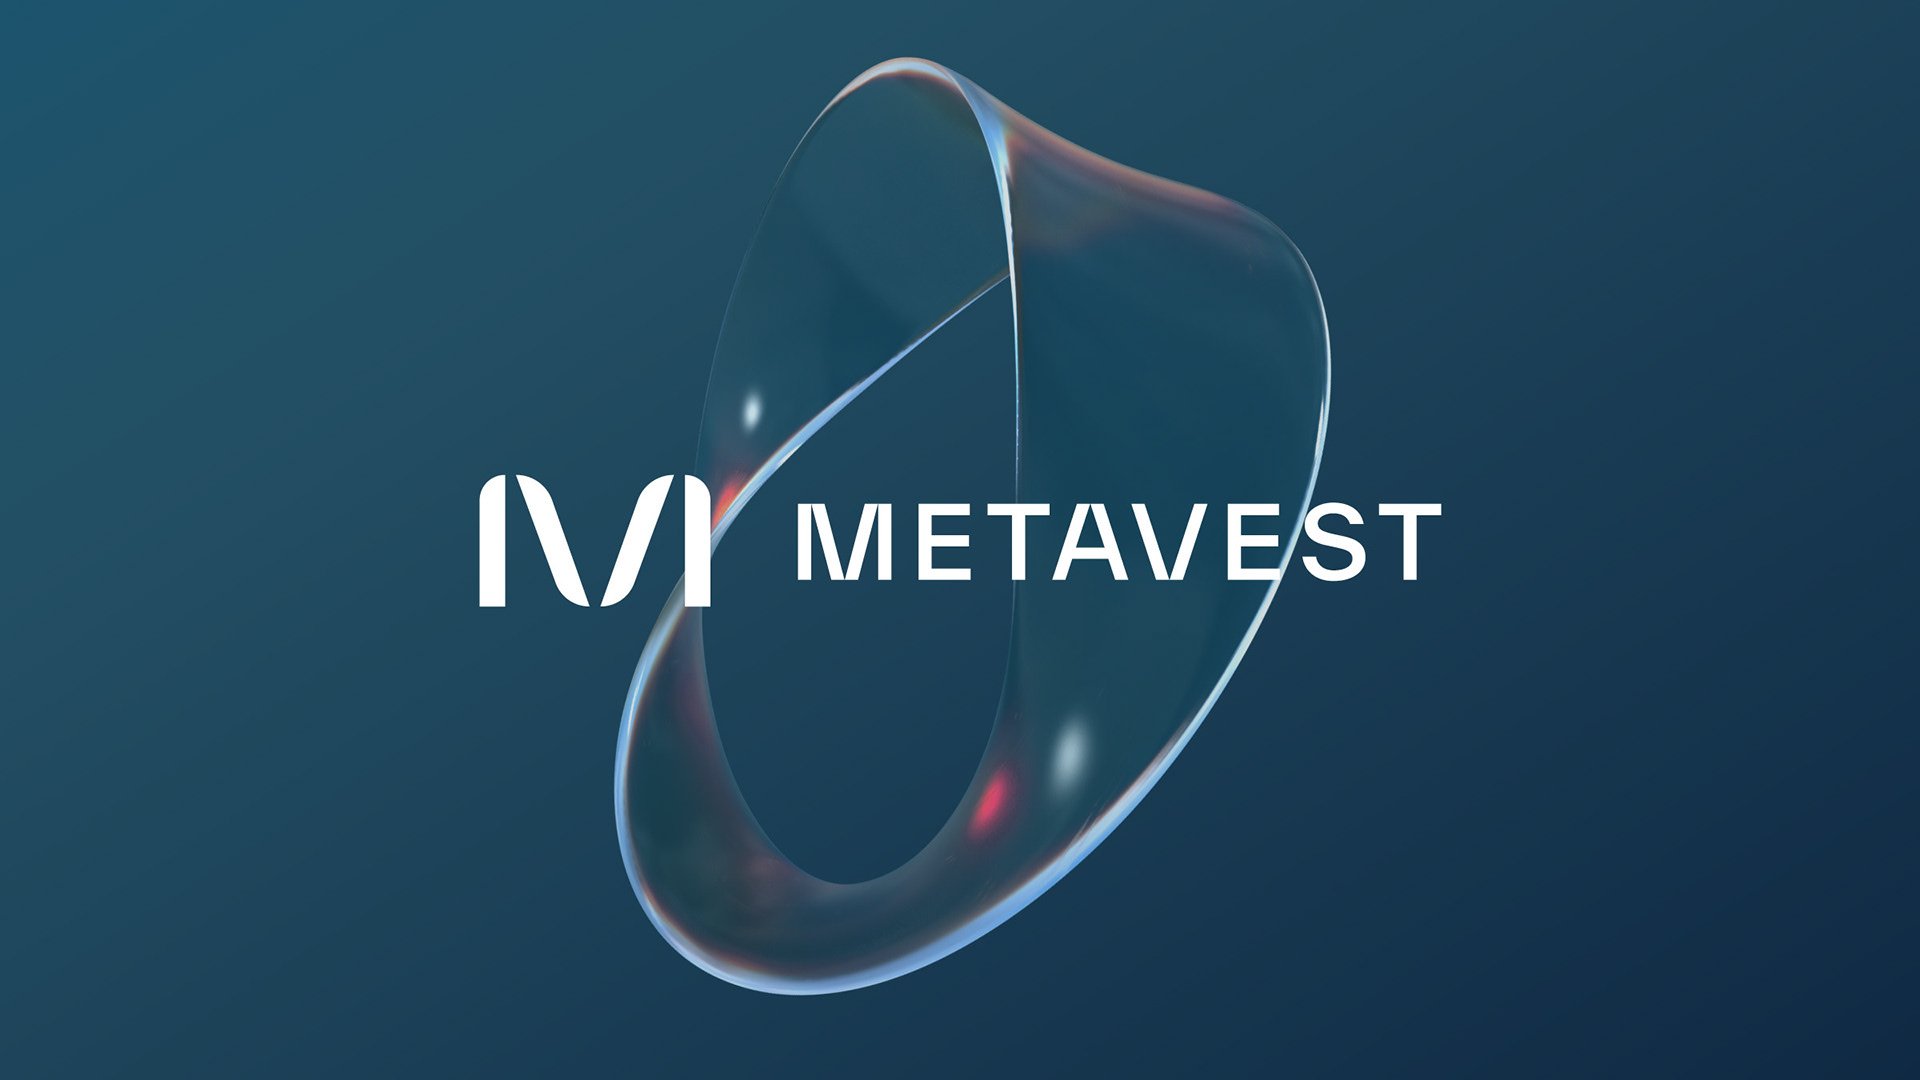 Mobil kripto bankacılık uygulaması Metavest, 1,6 milyon dolar tohum yatırım aldı